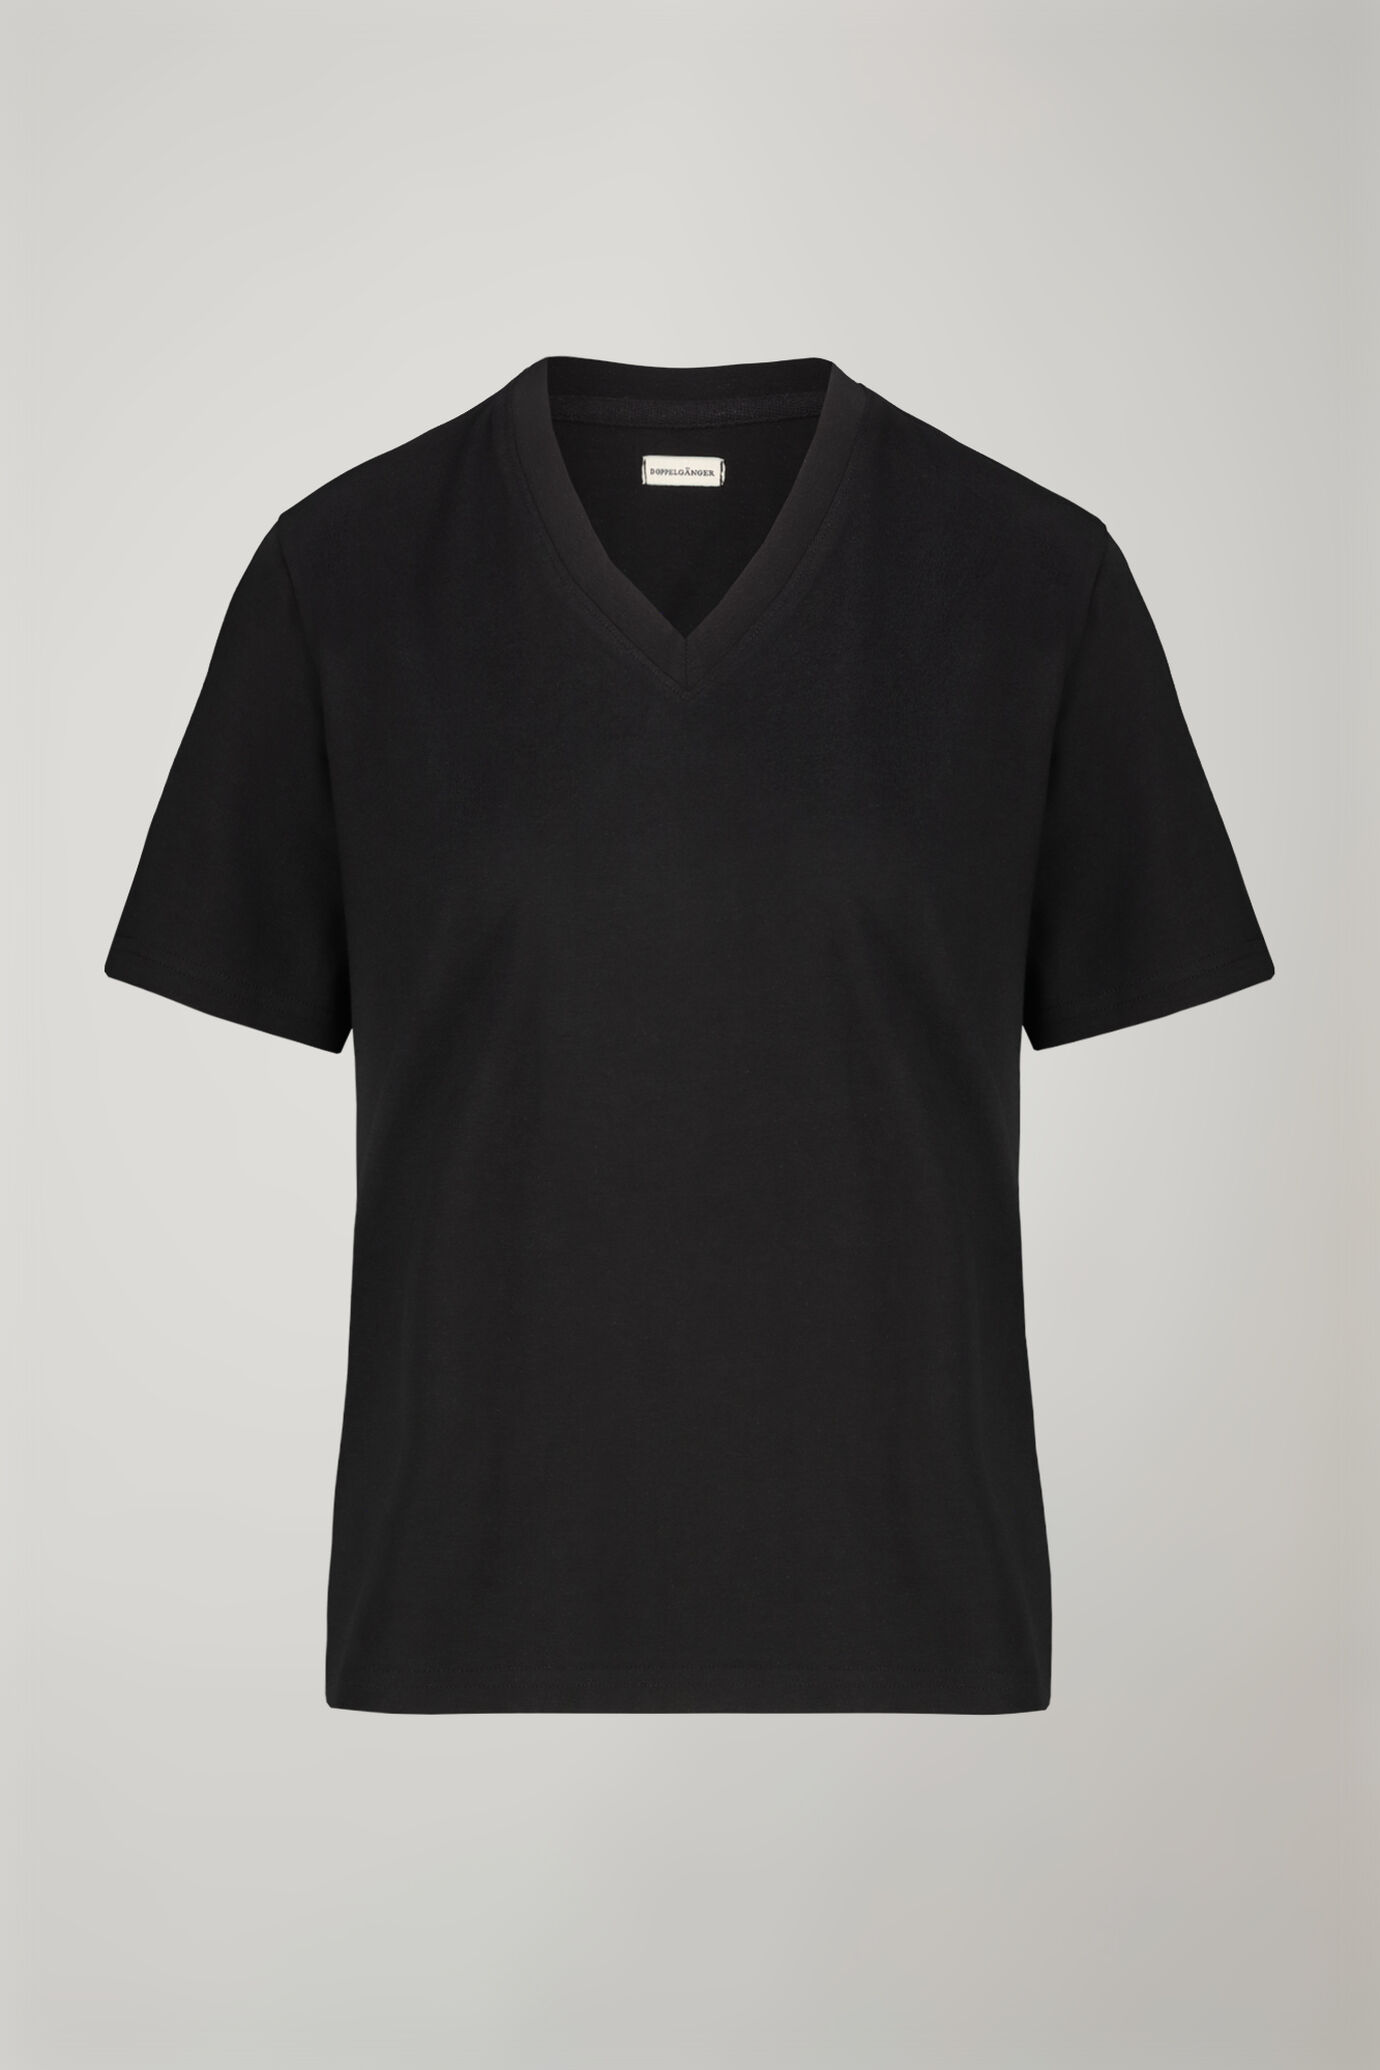 Damen-T-Shirt mit V-Ausschnitt aus 100 % Baumwolle in normaler Passform image number 4